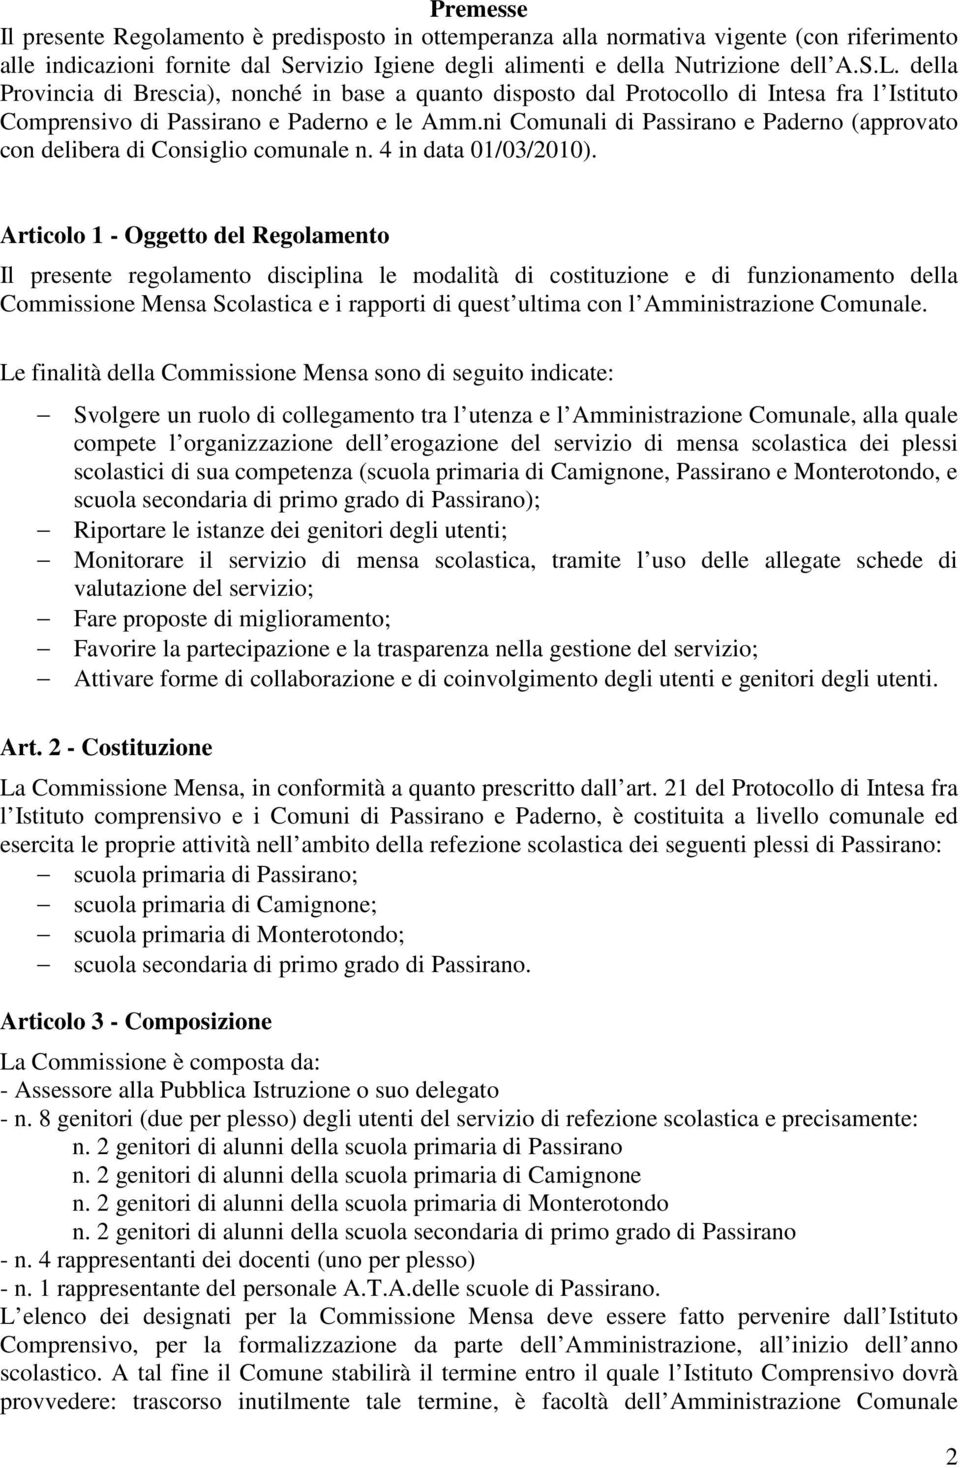 ni Comunali di Passirano e Paderno (approvato con delibera di Consiglio comunale n. 4 in data 01/03/2010).